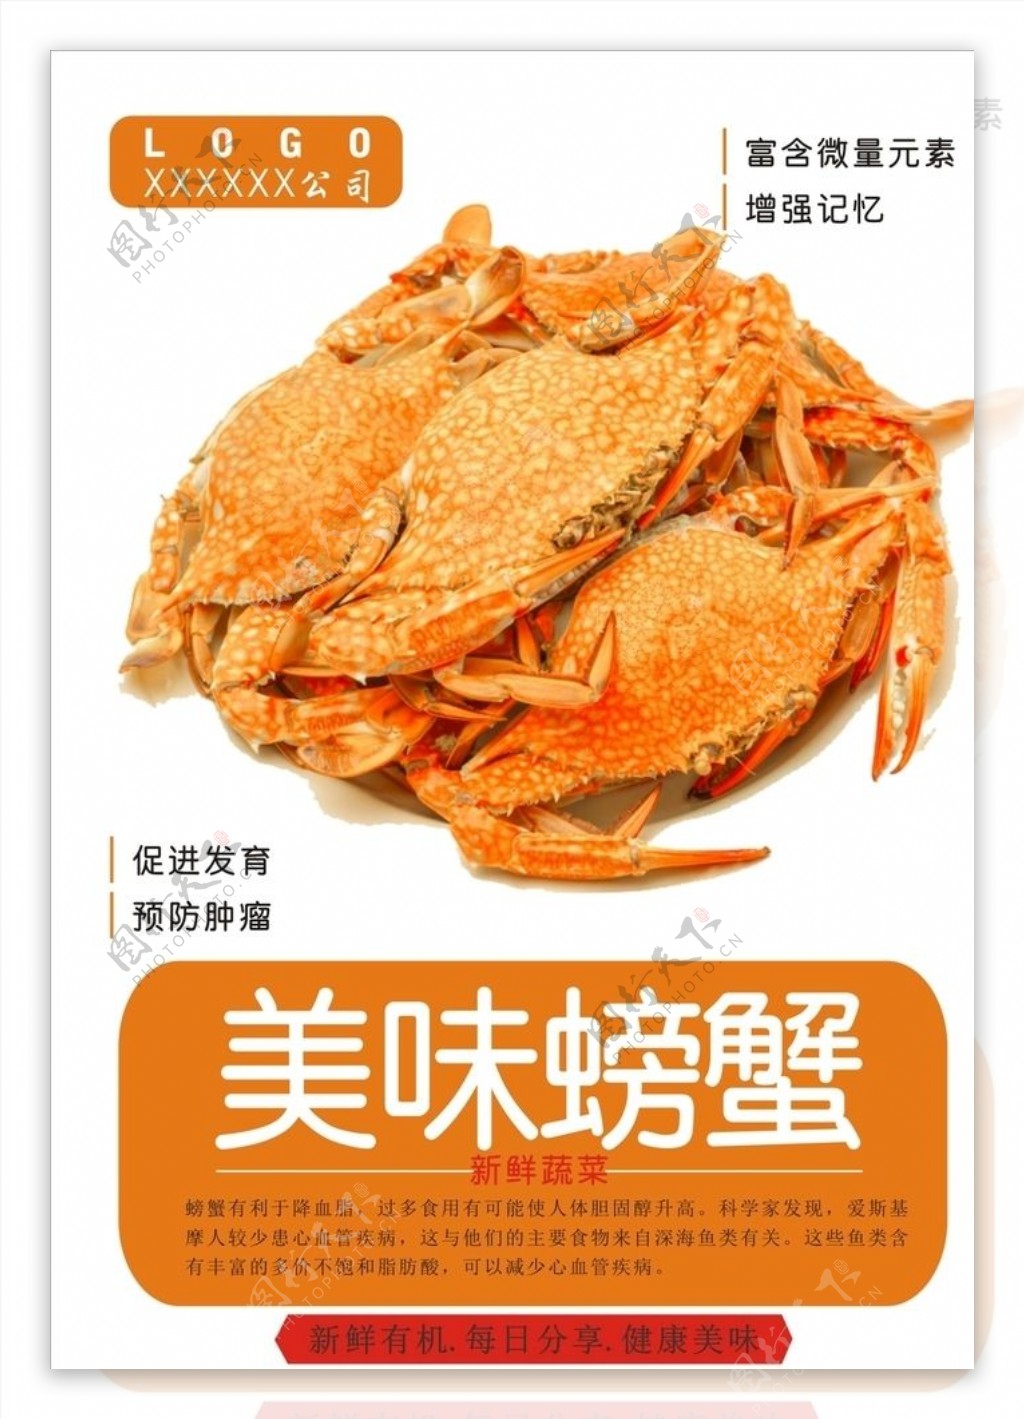 螃蟹海报